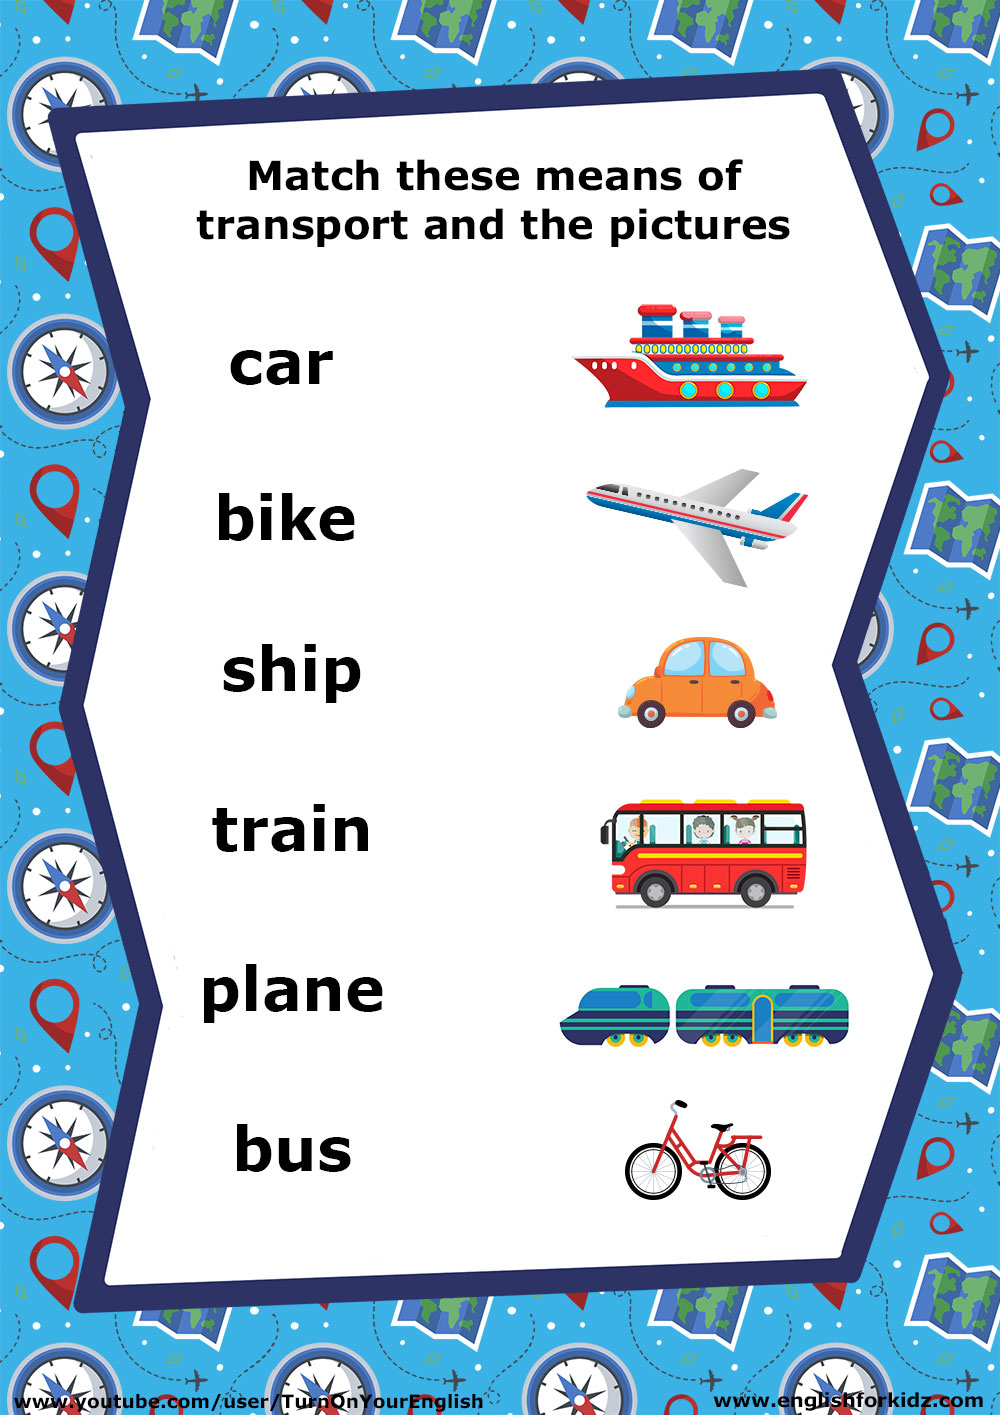 Задания по английскому транспорт. Задание на тему транспорт английский. Задания по теме транспорт на английском языке. Transport задания английский для детей.